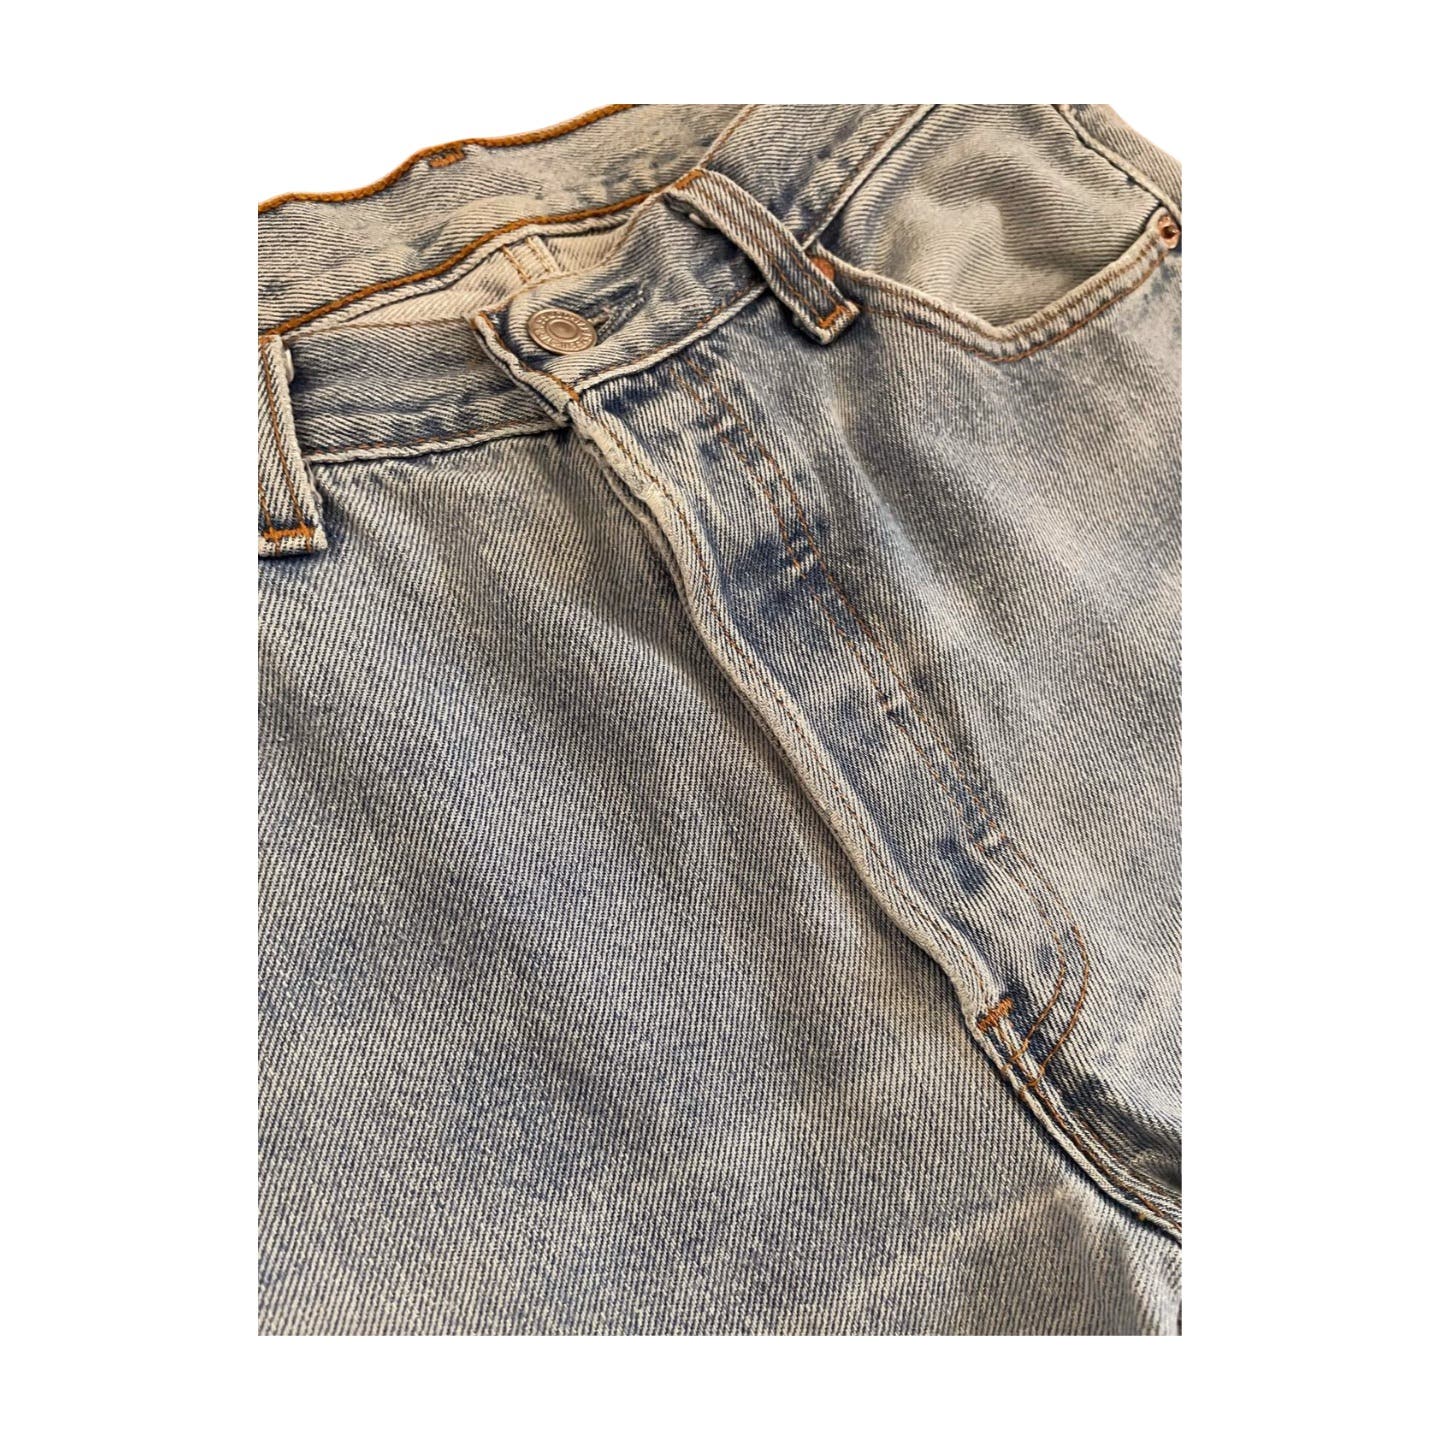 Vintage Levi’s 501 Jeans - Le Look